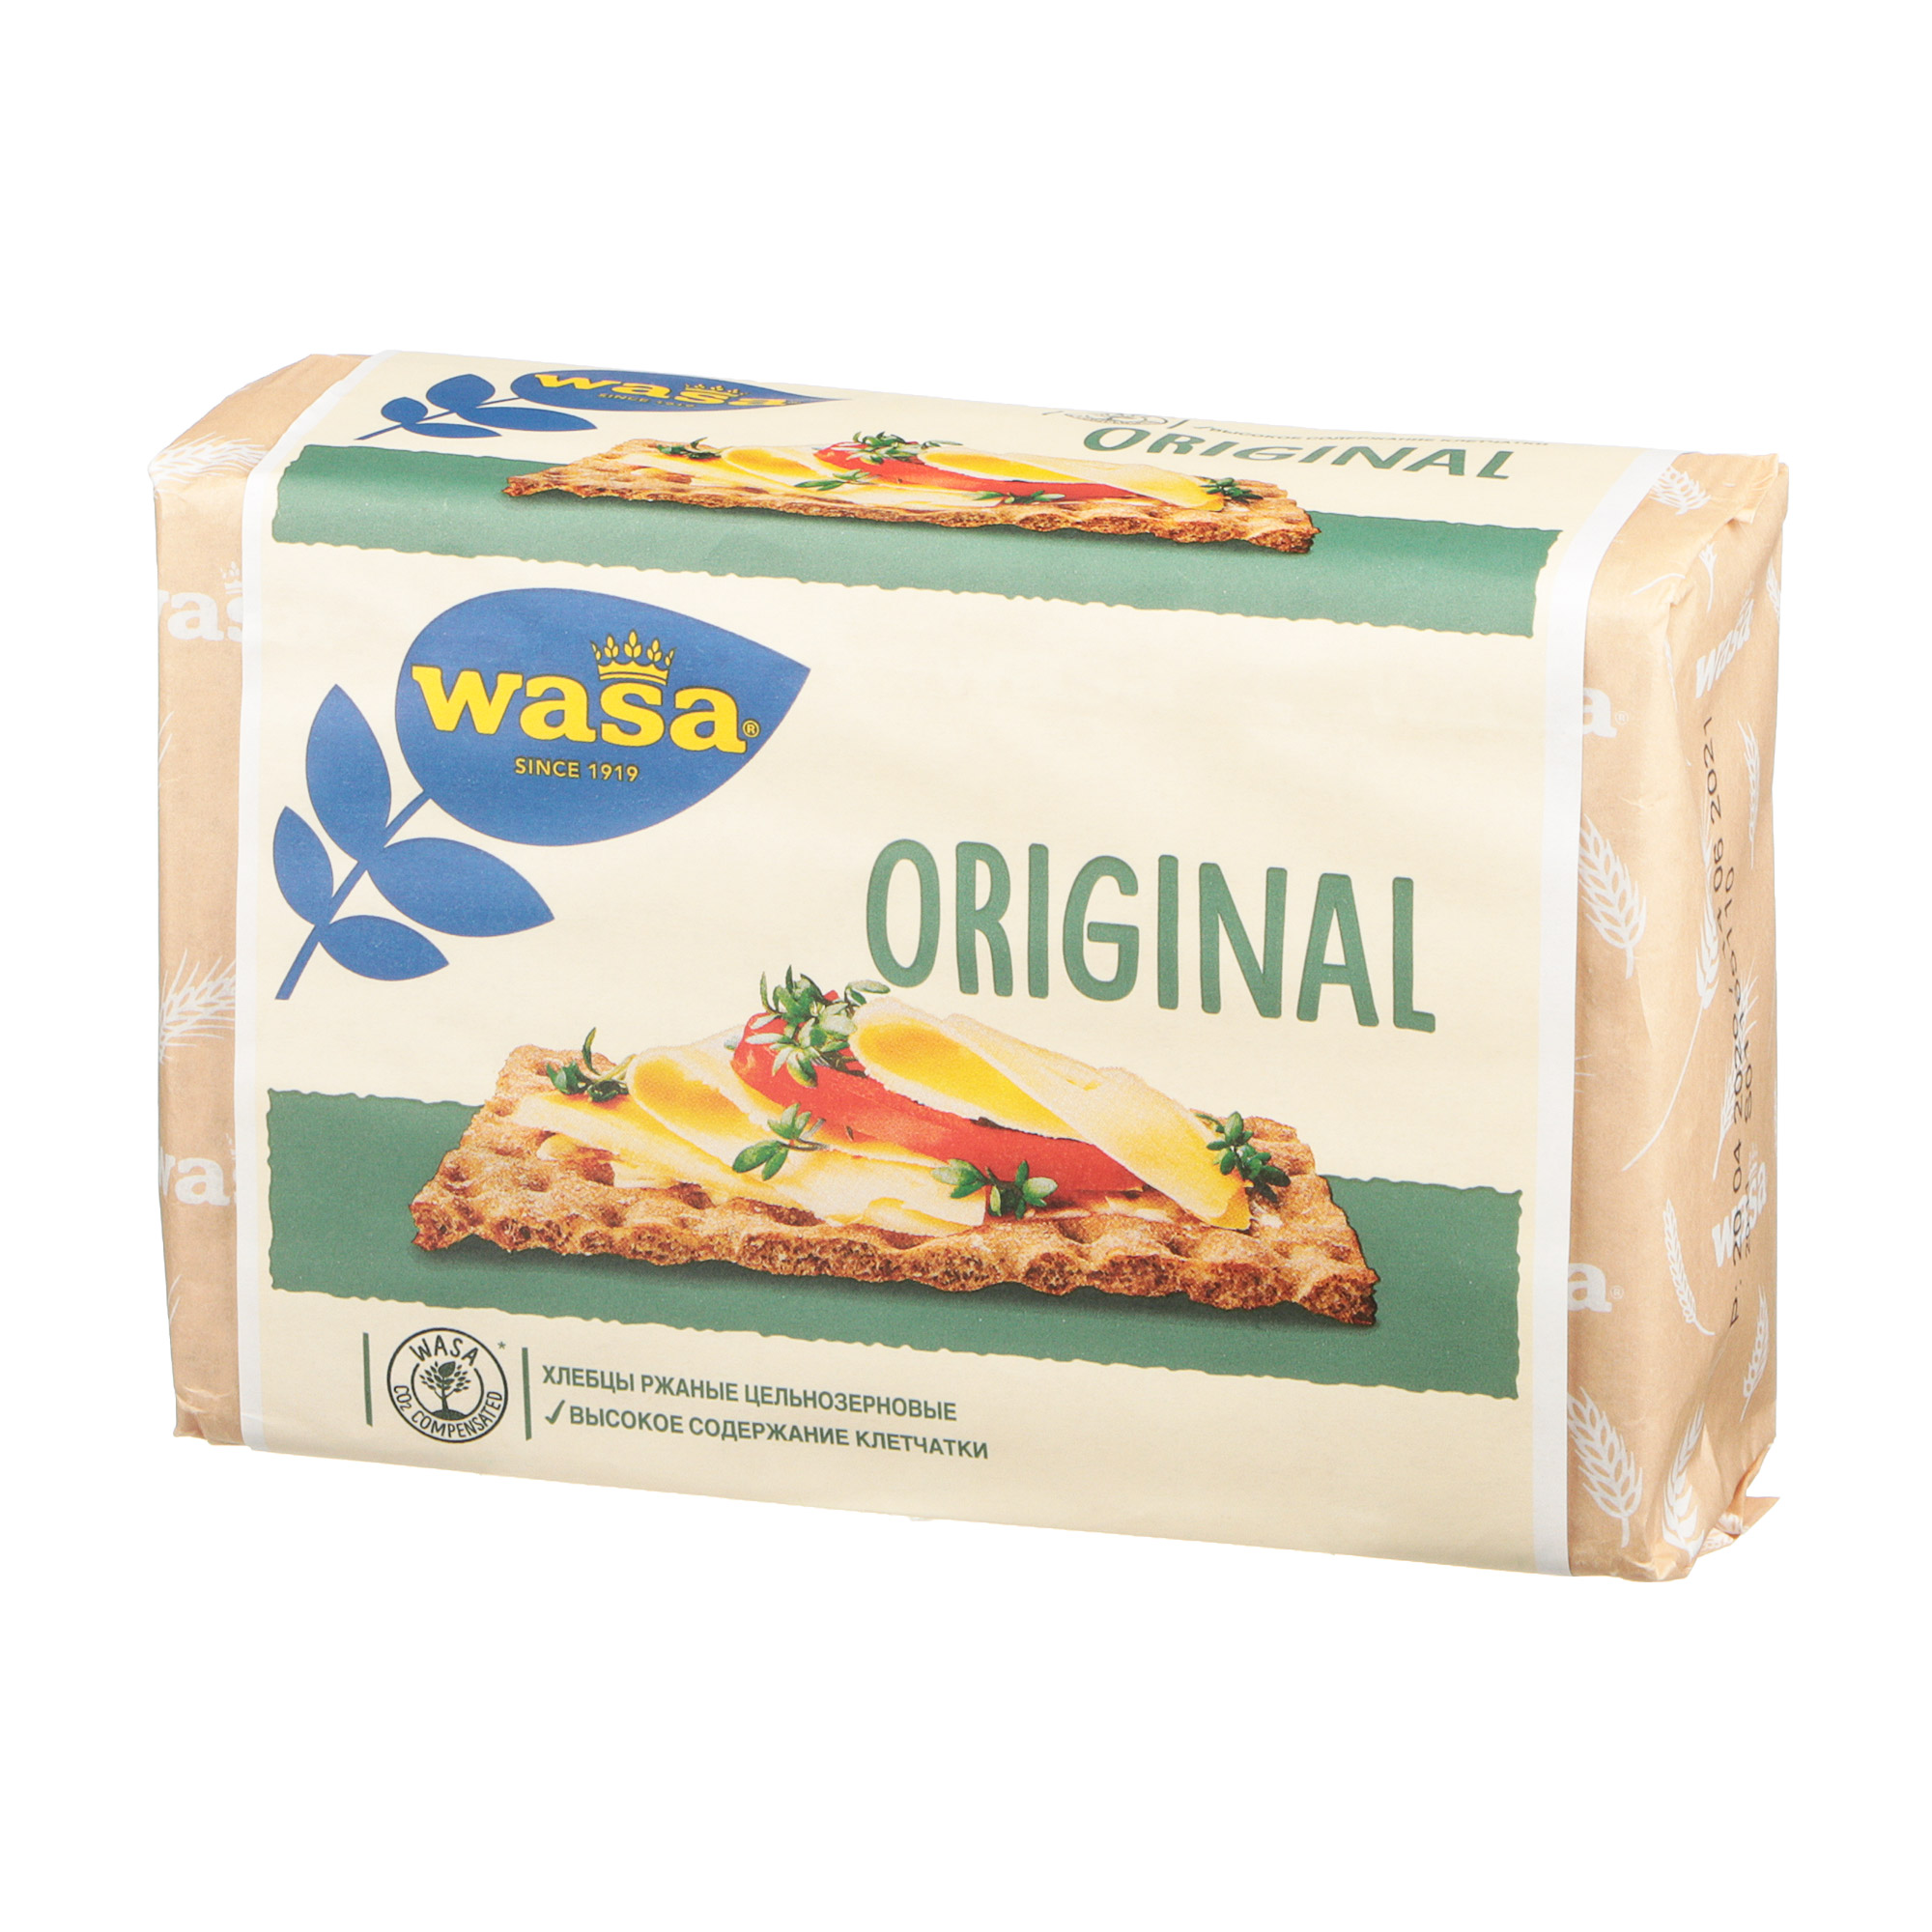 Хлебцы ржаные Wasa Original цельнозерновые 275 г хлебцы пшеничные цельнозерновые wasa с розмарином и морской солью 190 г